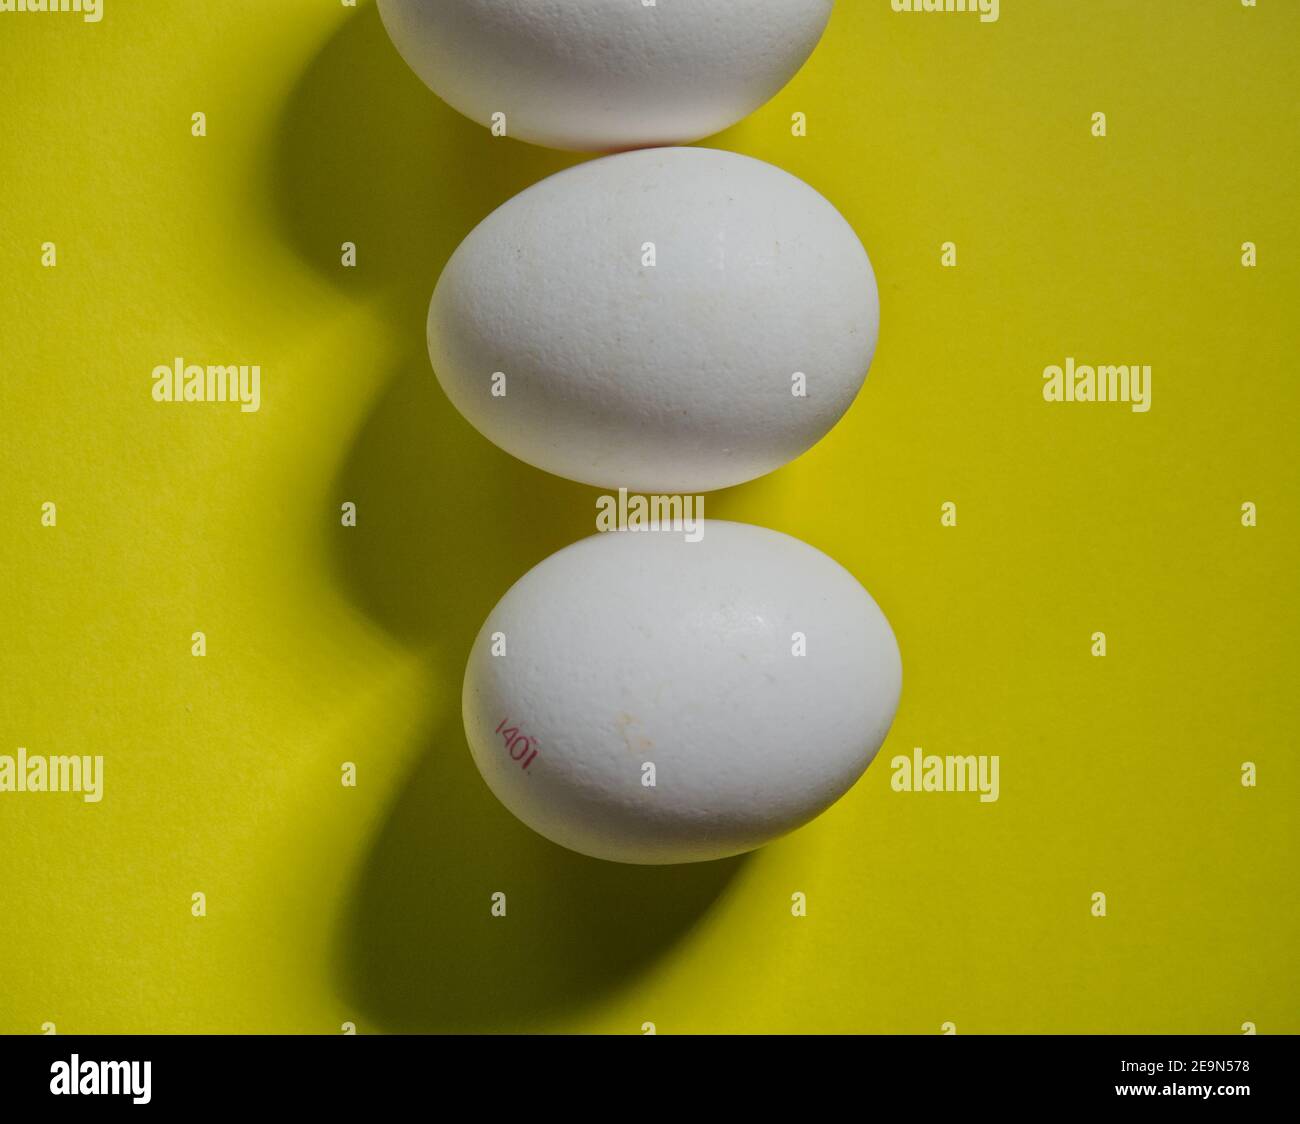 Three white bio eggs on yellow background, topview Stock Photo